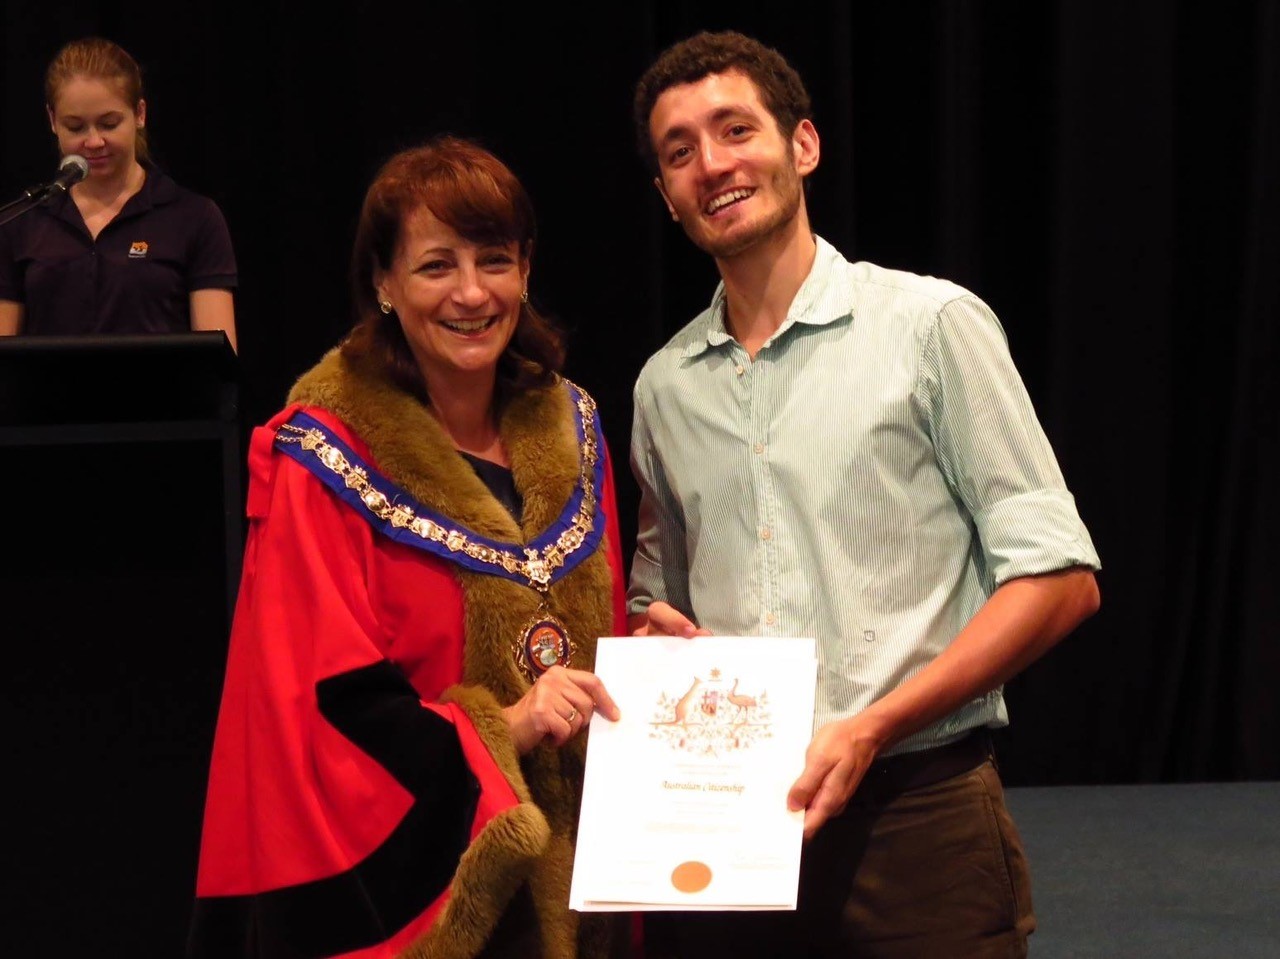 Martino alla sua cerimonia di cittadinanza australiana, 2015, Cairns